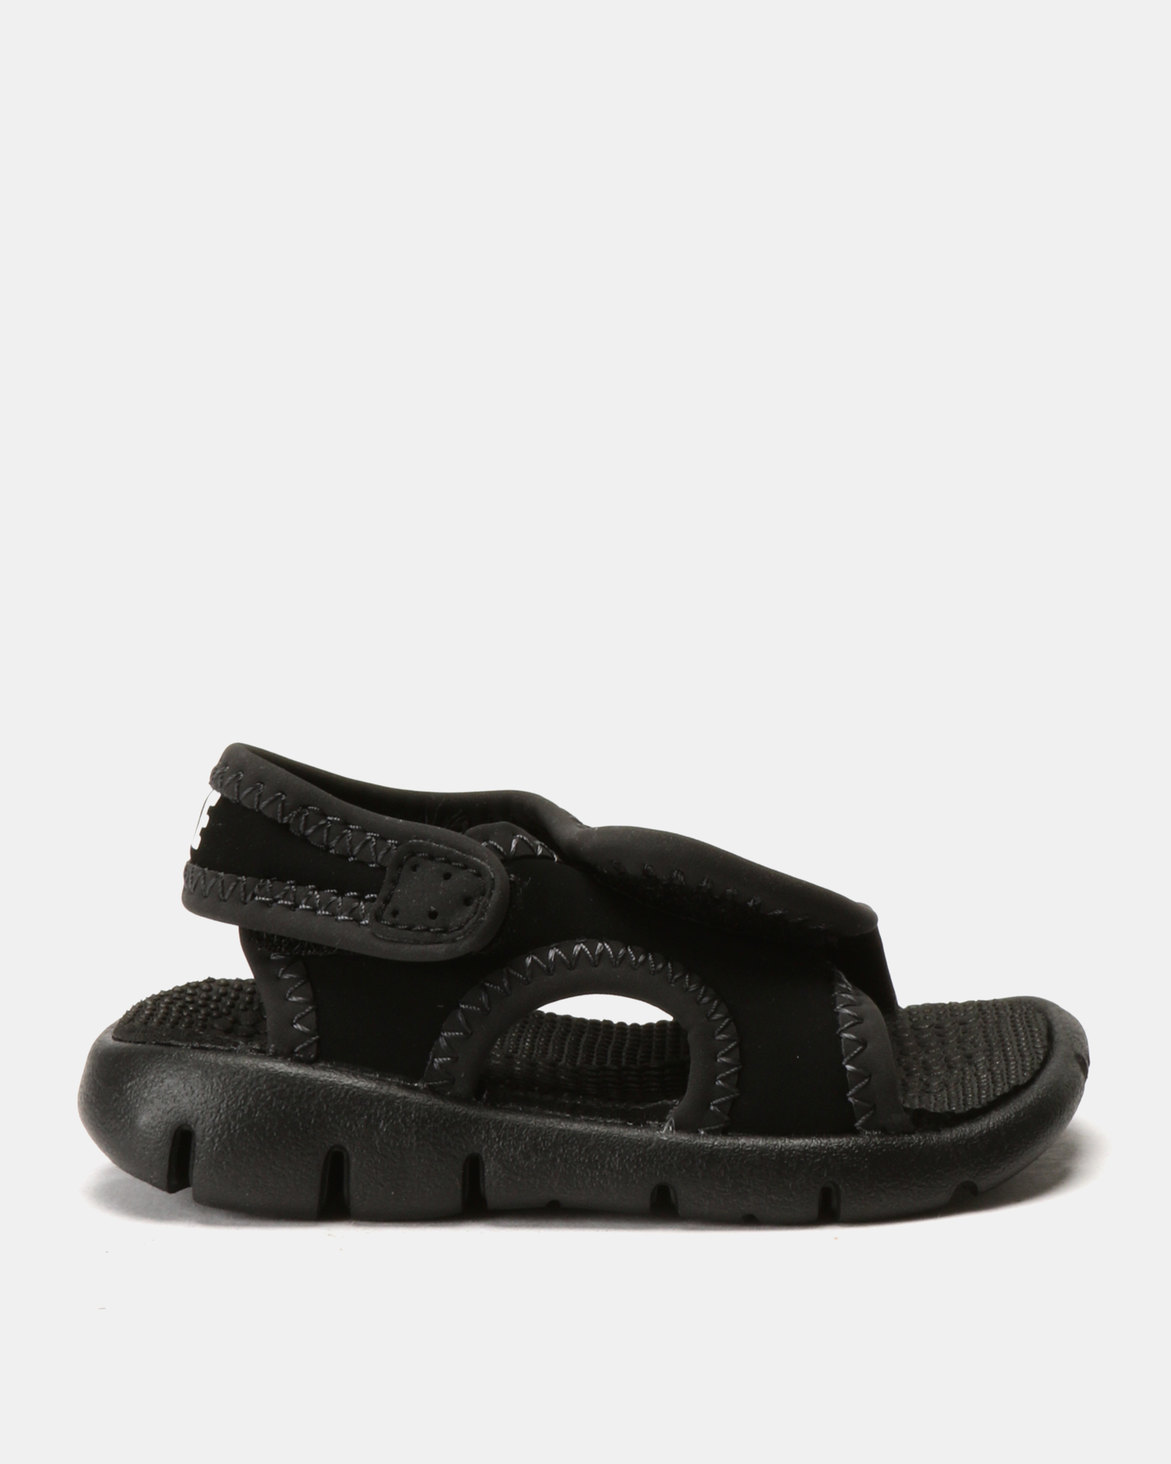 Nike Sunray Adjust 4 (TD) Sandals Black | Zando